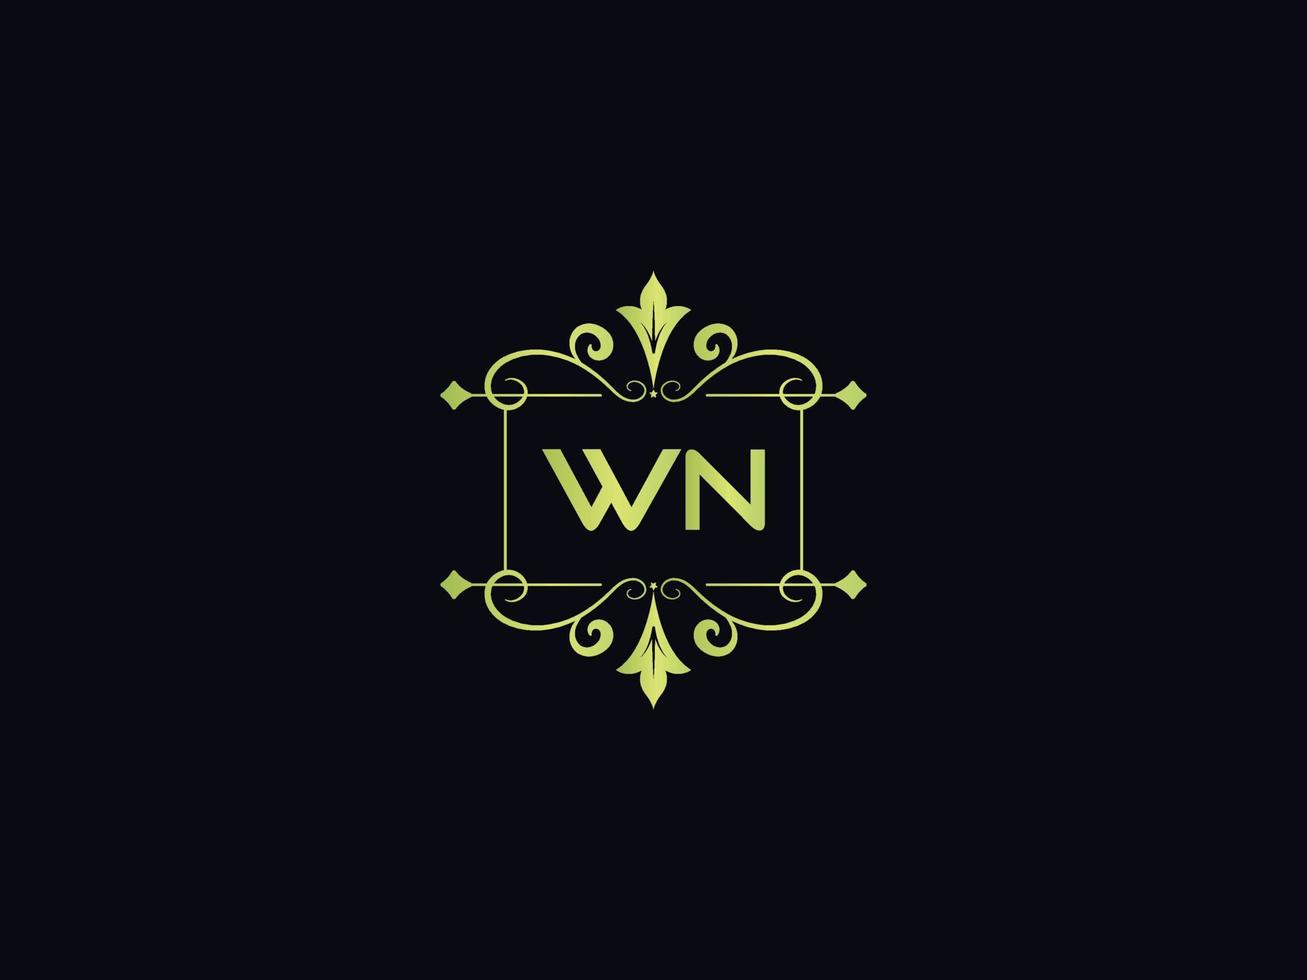 icône de logo typographie wn, logo de lettre colorée de luxe wn unique vecteur